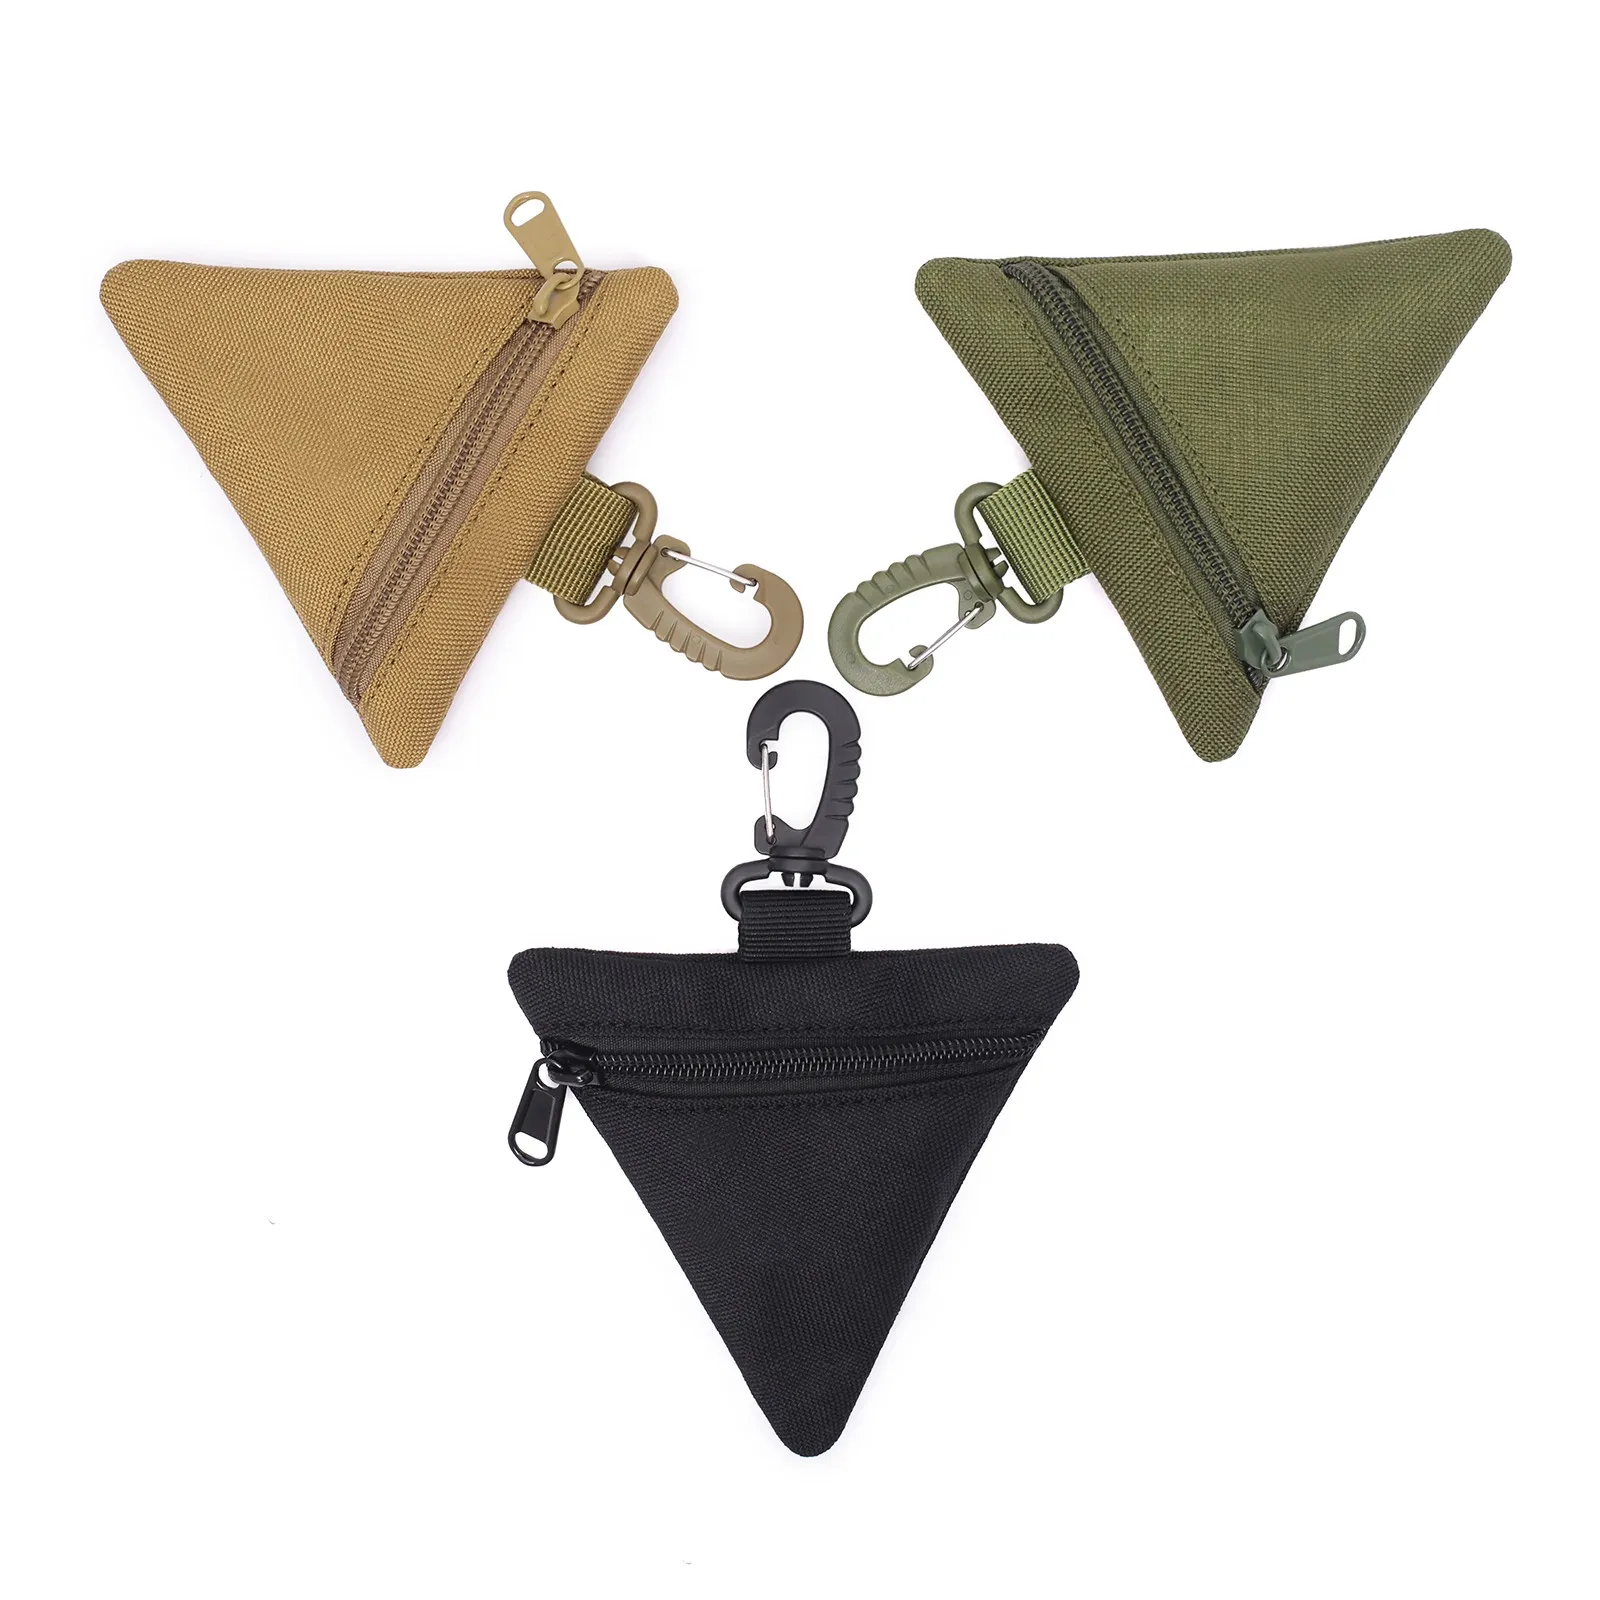 مصغرة محفظة التكتيكية عملة مفتاح محفظة حزمة صغيرة سماعة الحقائب في مثلث مثلث الخصر حقيبة الصيد حقيبة